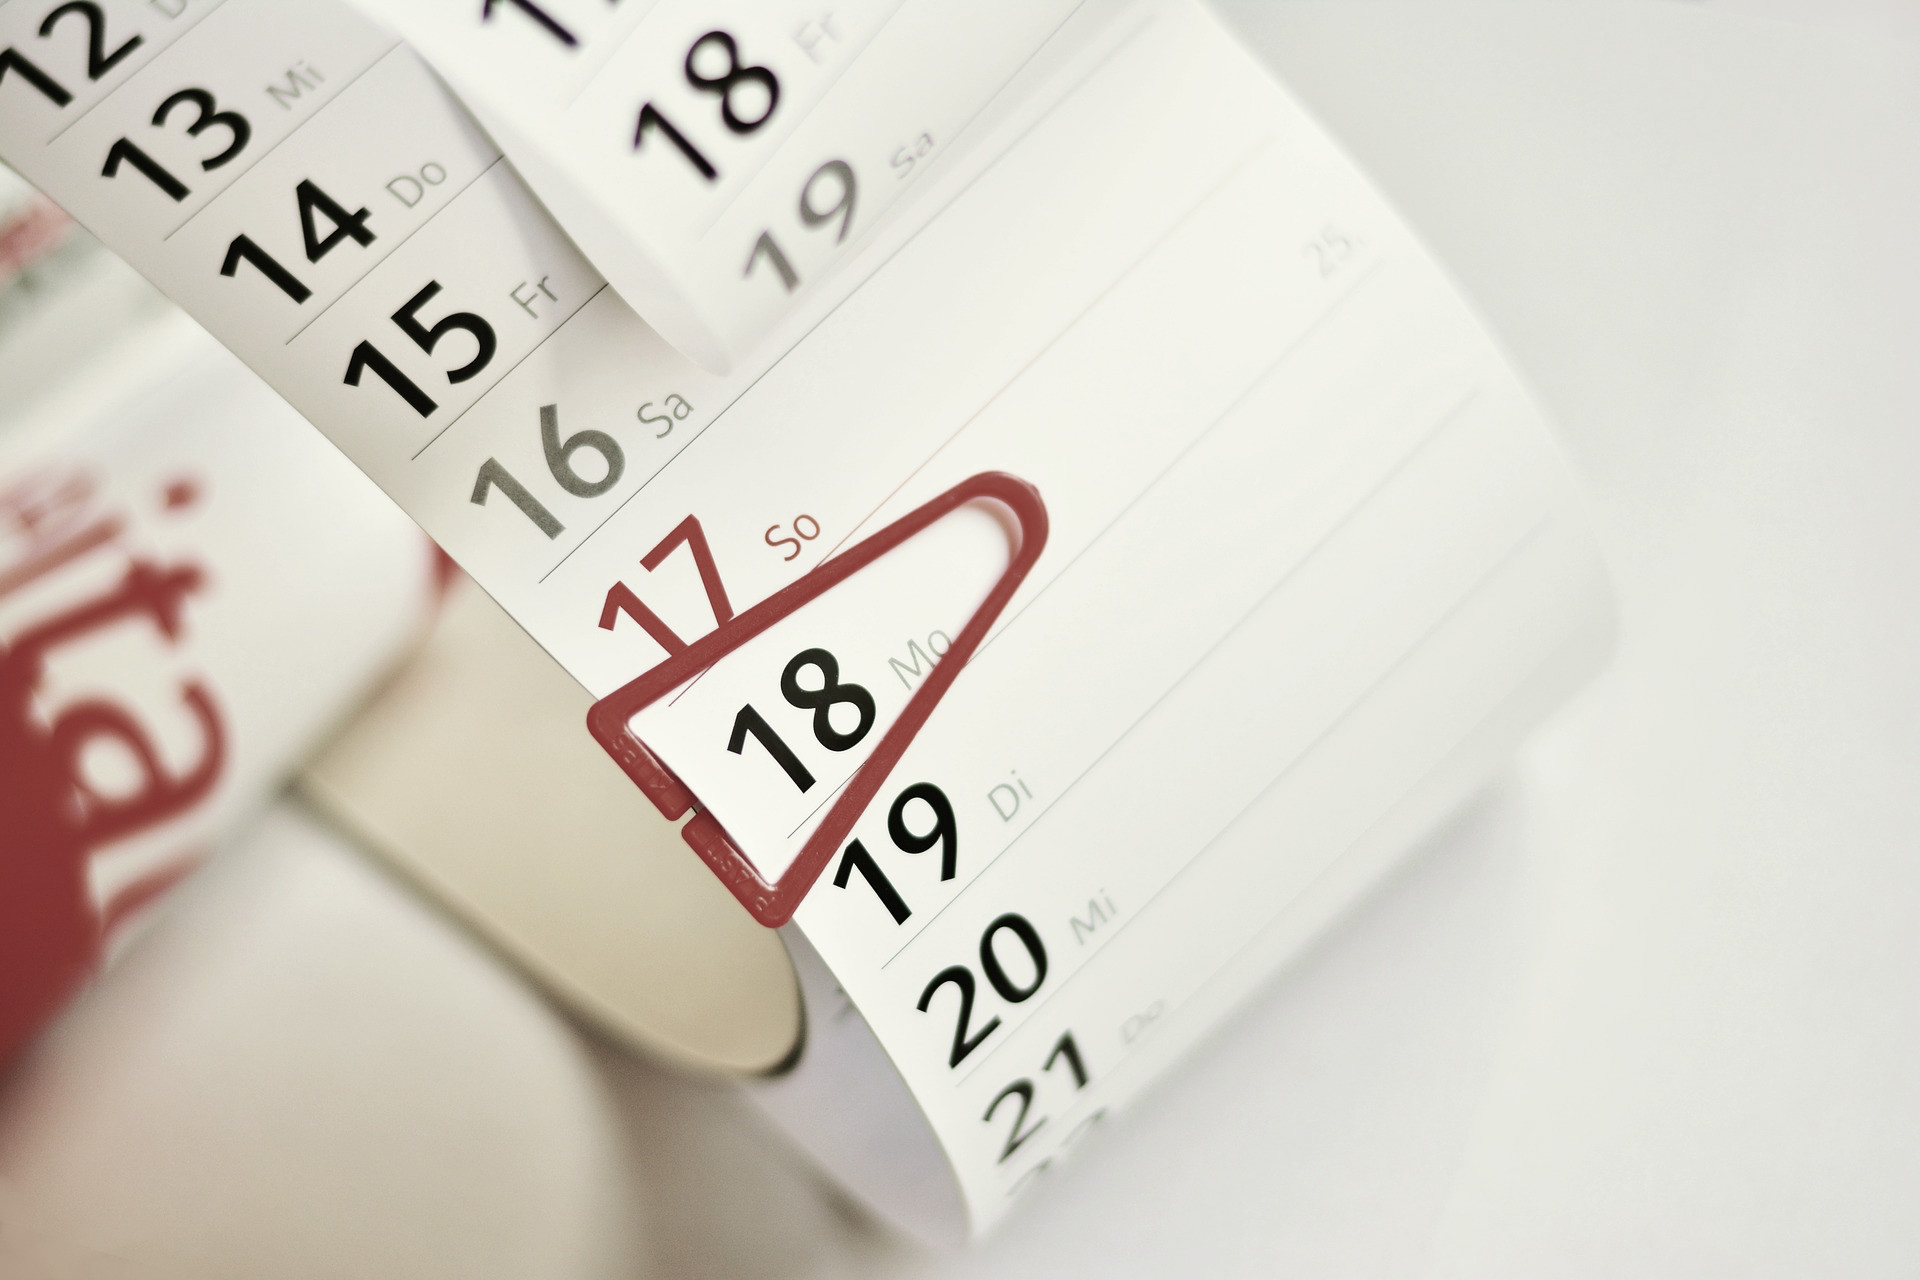 Calendar indicatiang good time management